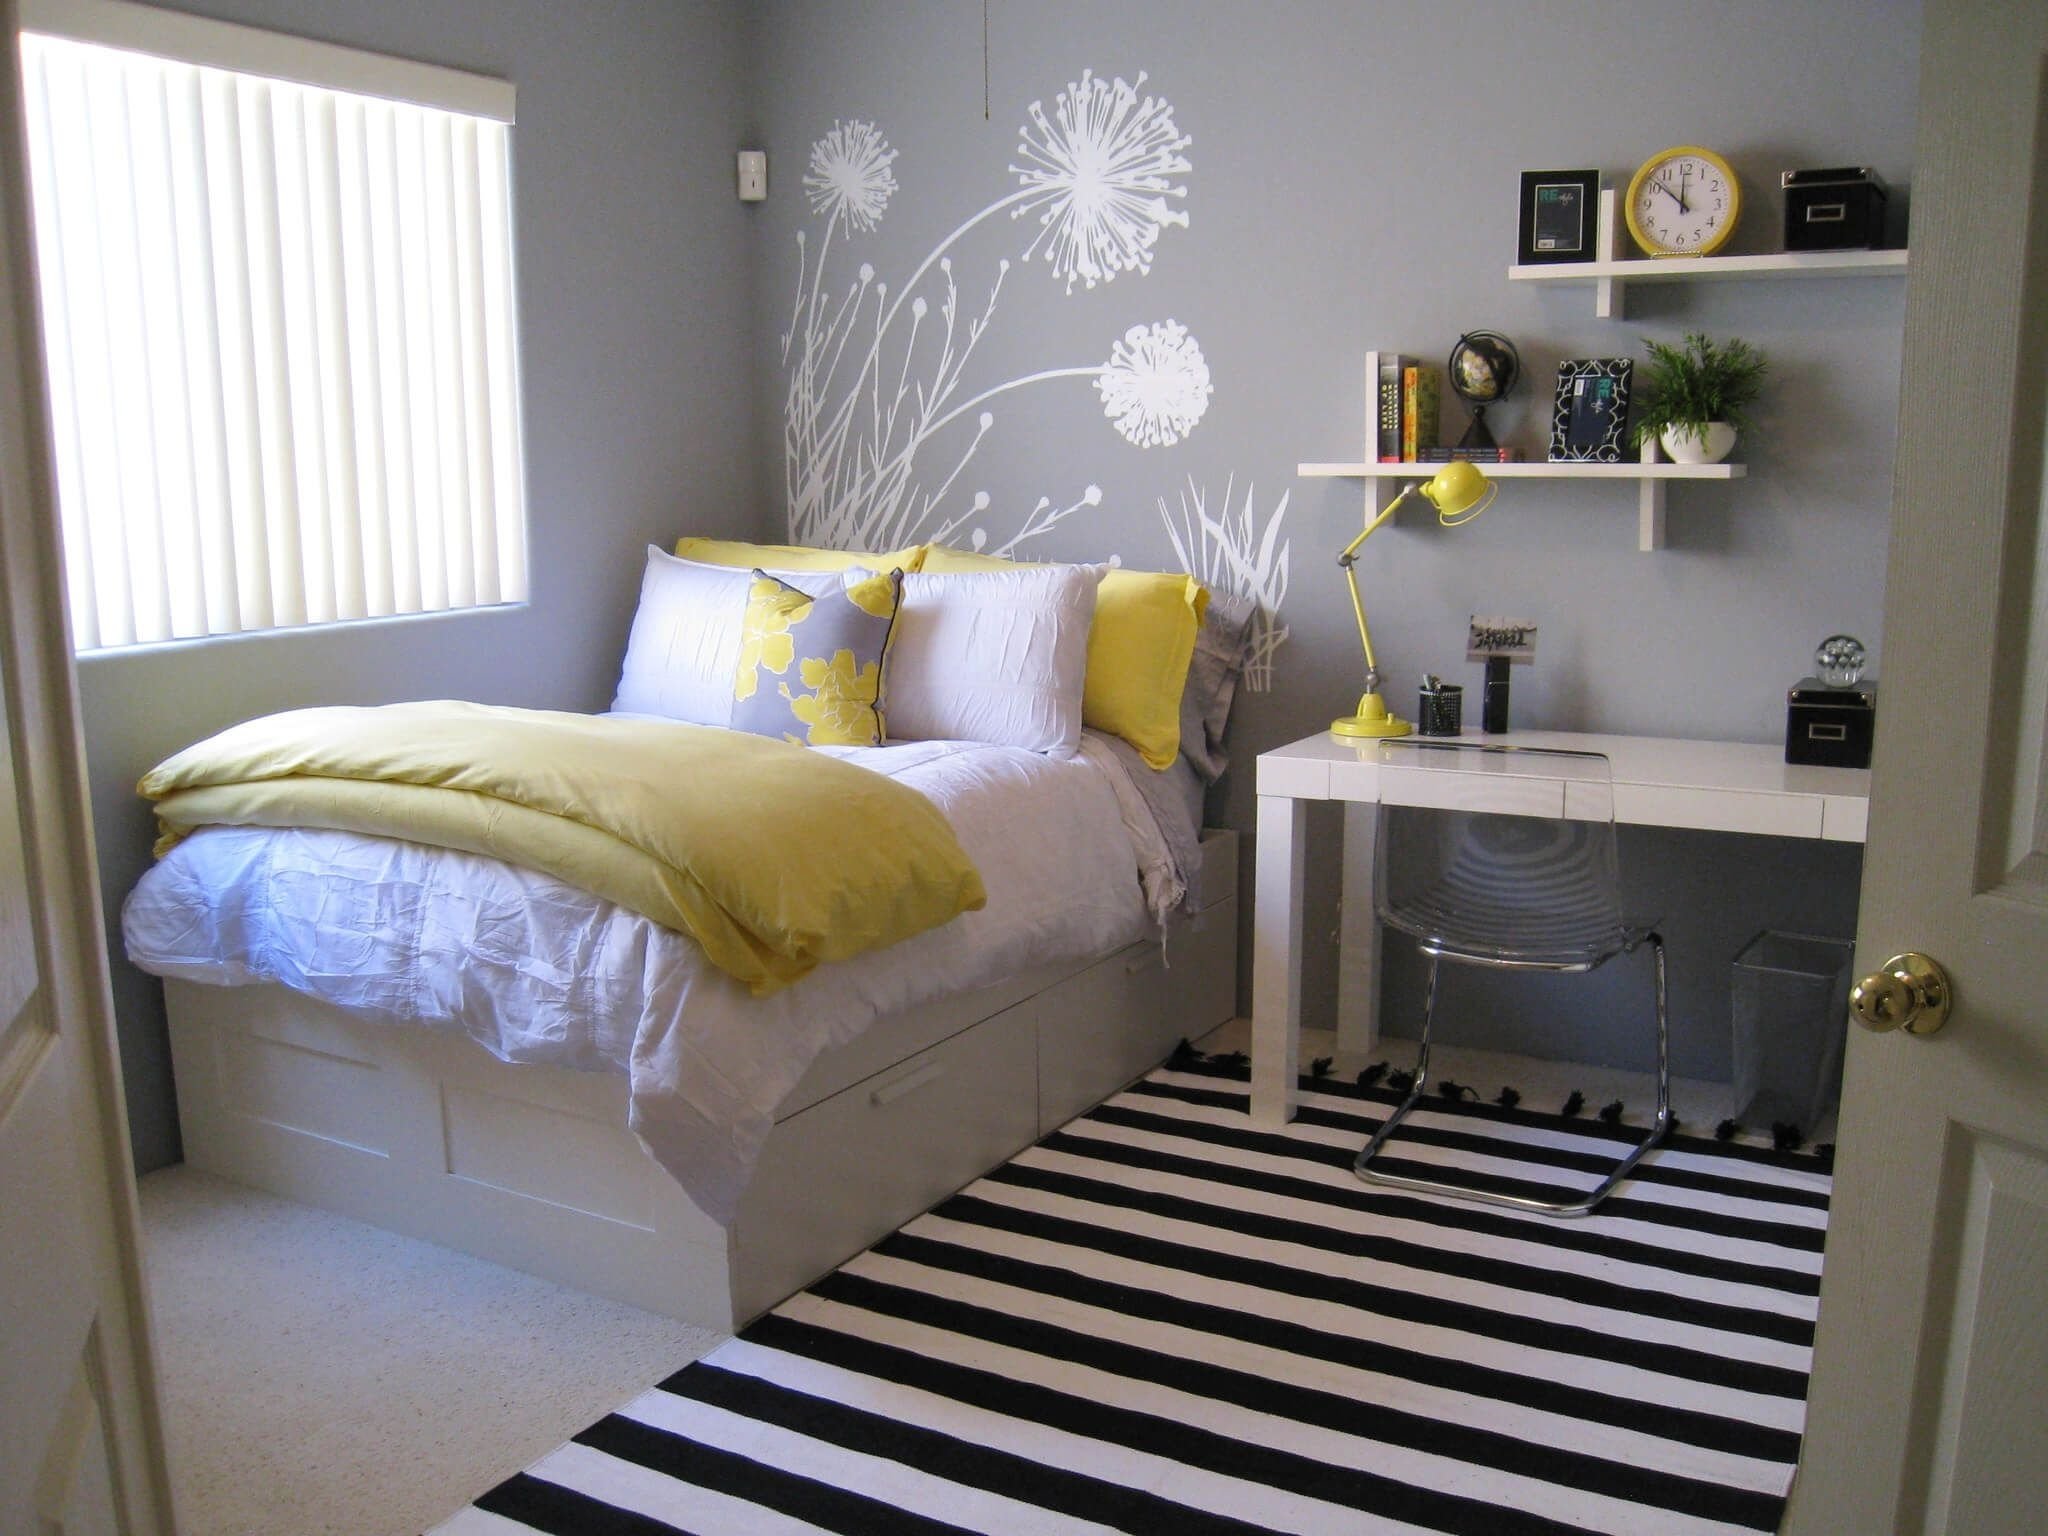 Decor Idea For Small Bedrooms